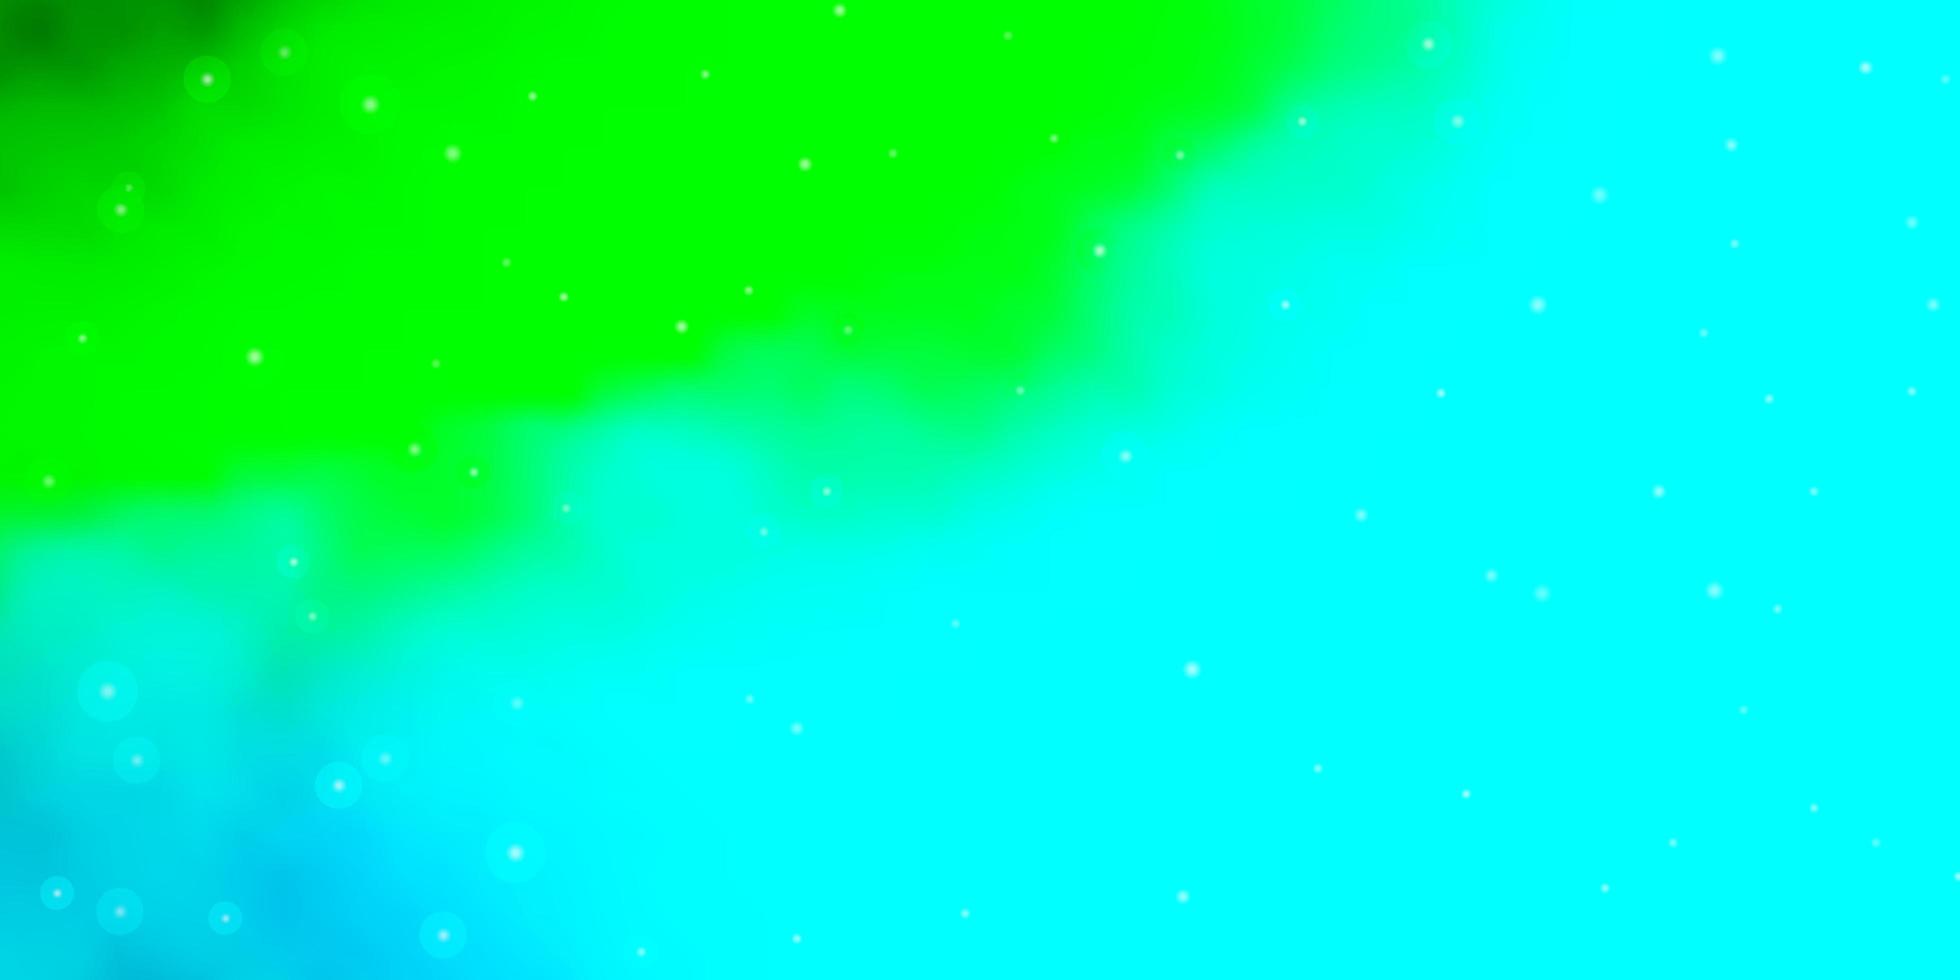 lichtblauwe, groene vectorachtergrond met kleine en grote sterren. decoratieve afbeelding met sterren op abstracte sjabloon. beste ontwerp voor uw advertentie, poster, banner. vector